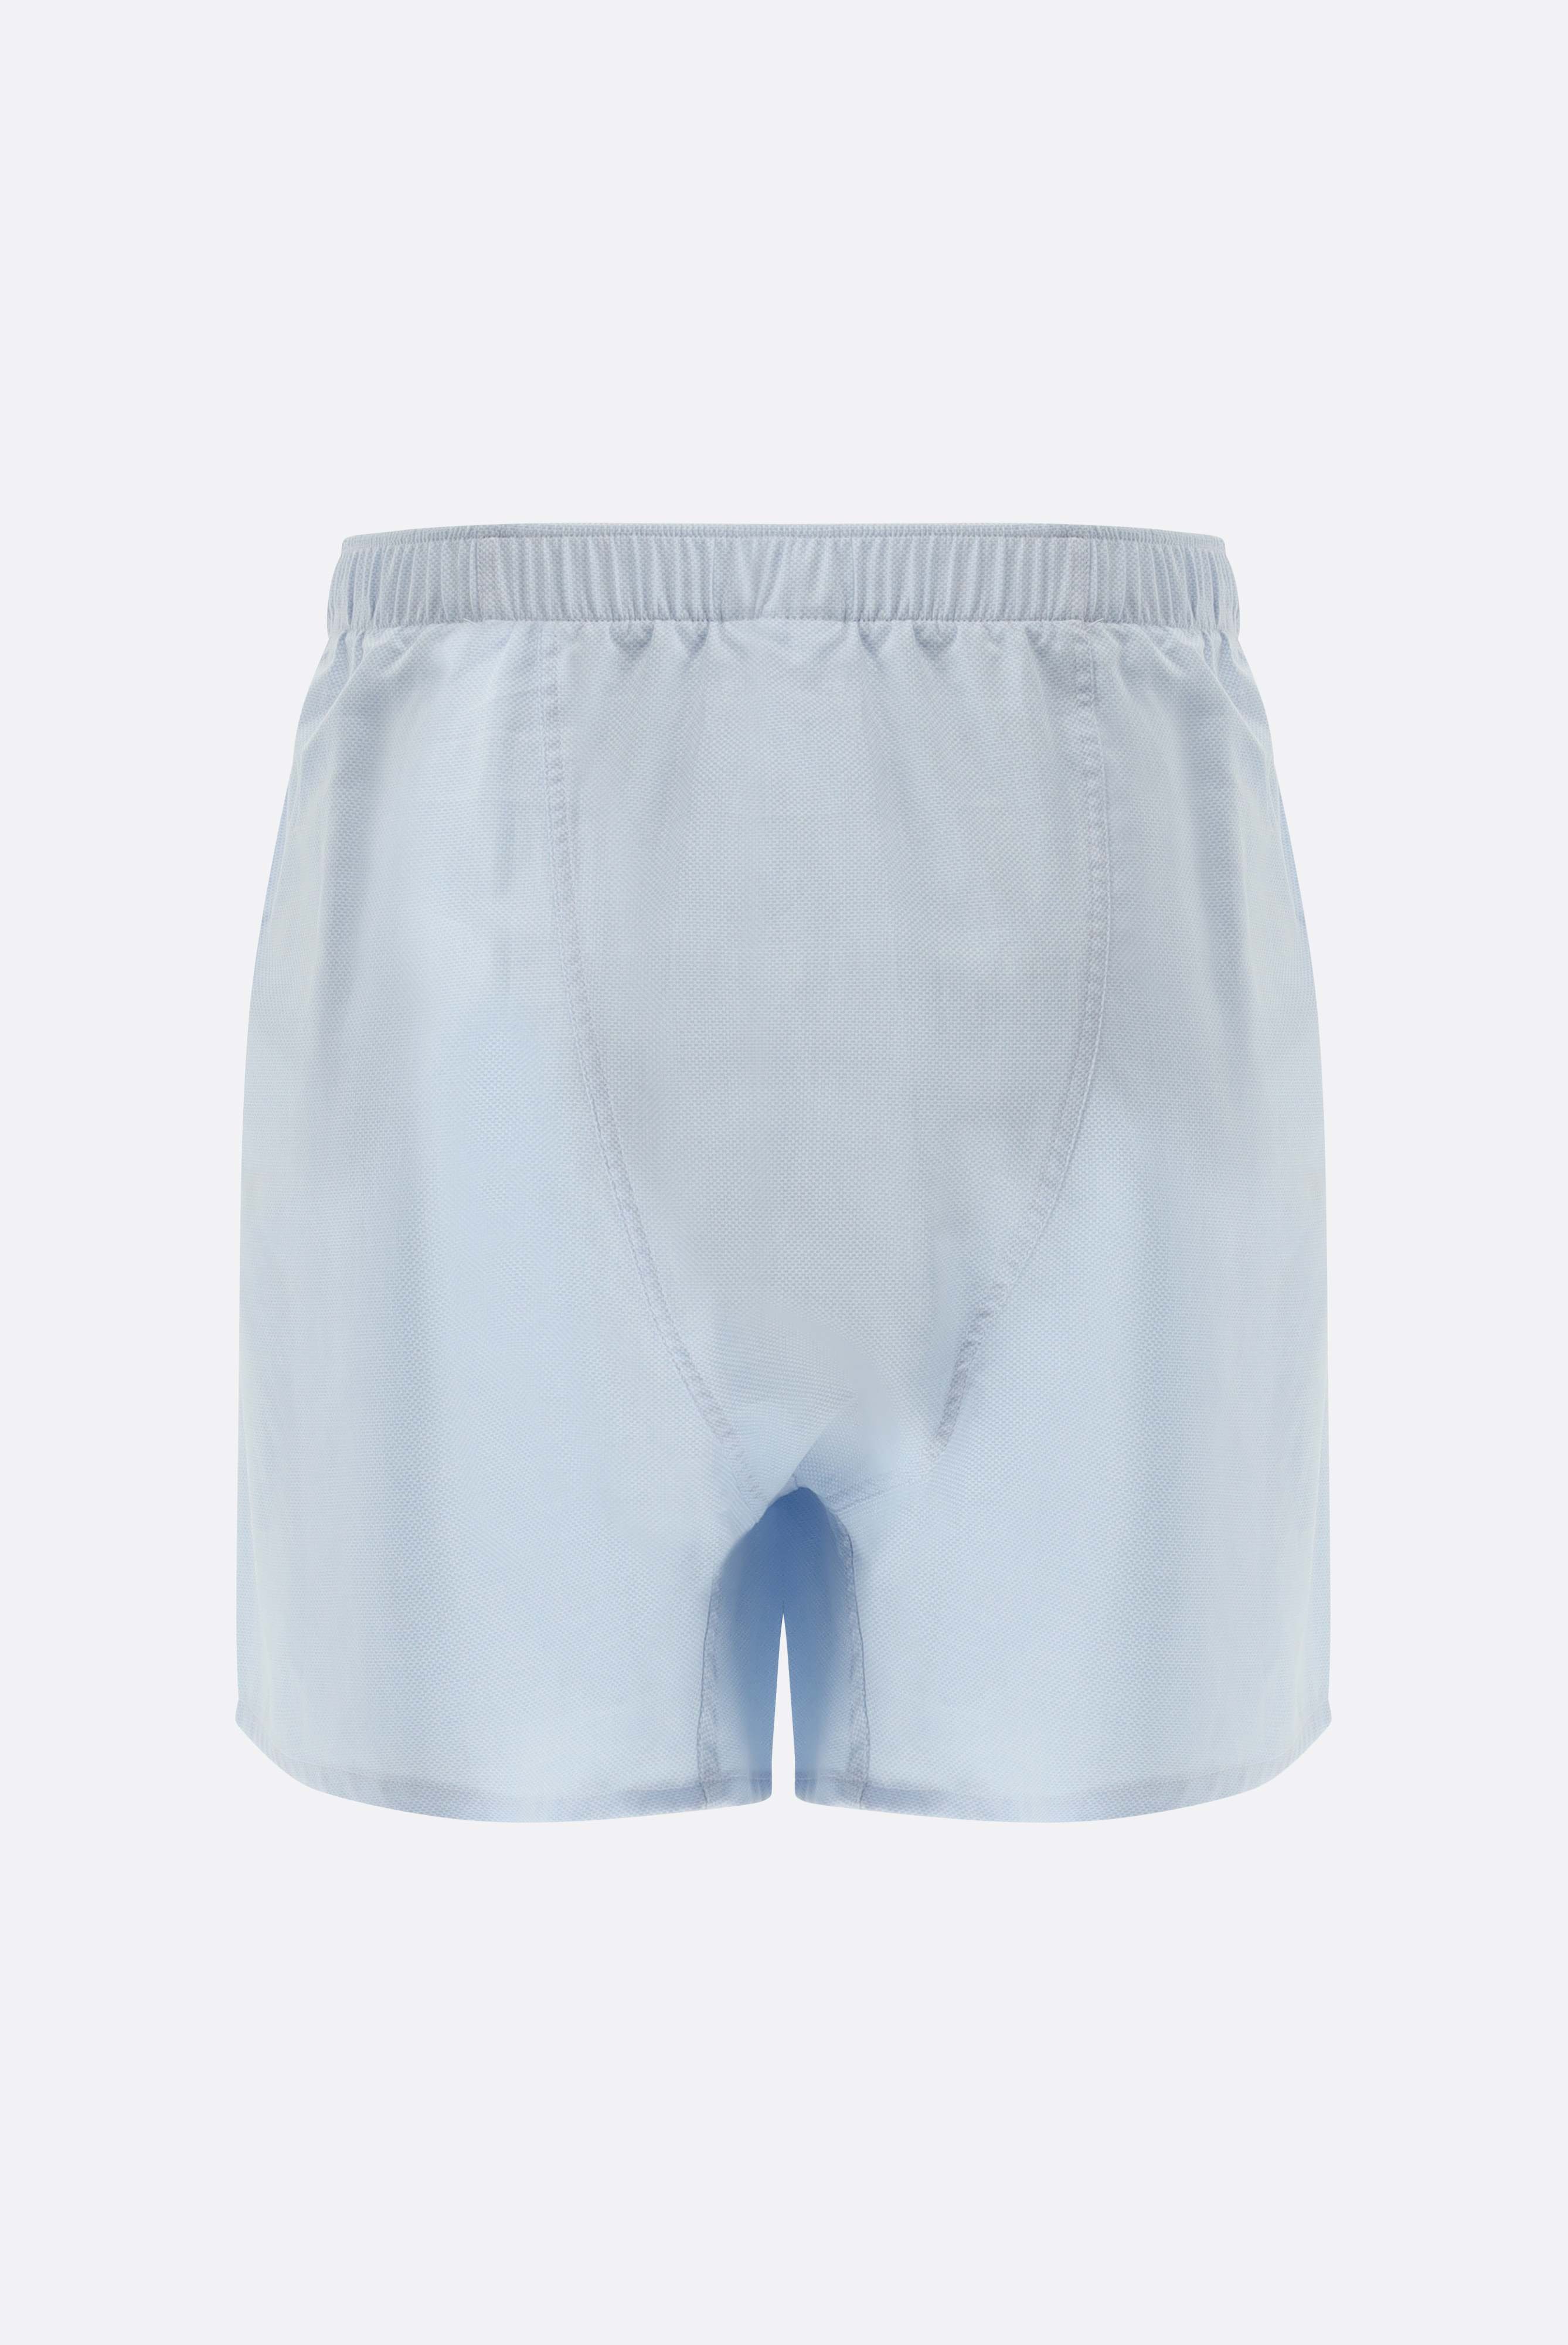 Underwear+Pique-Dobby Boxer Shorts+91.1100..151885.720.46